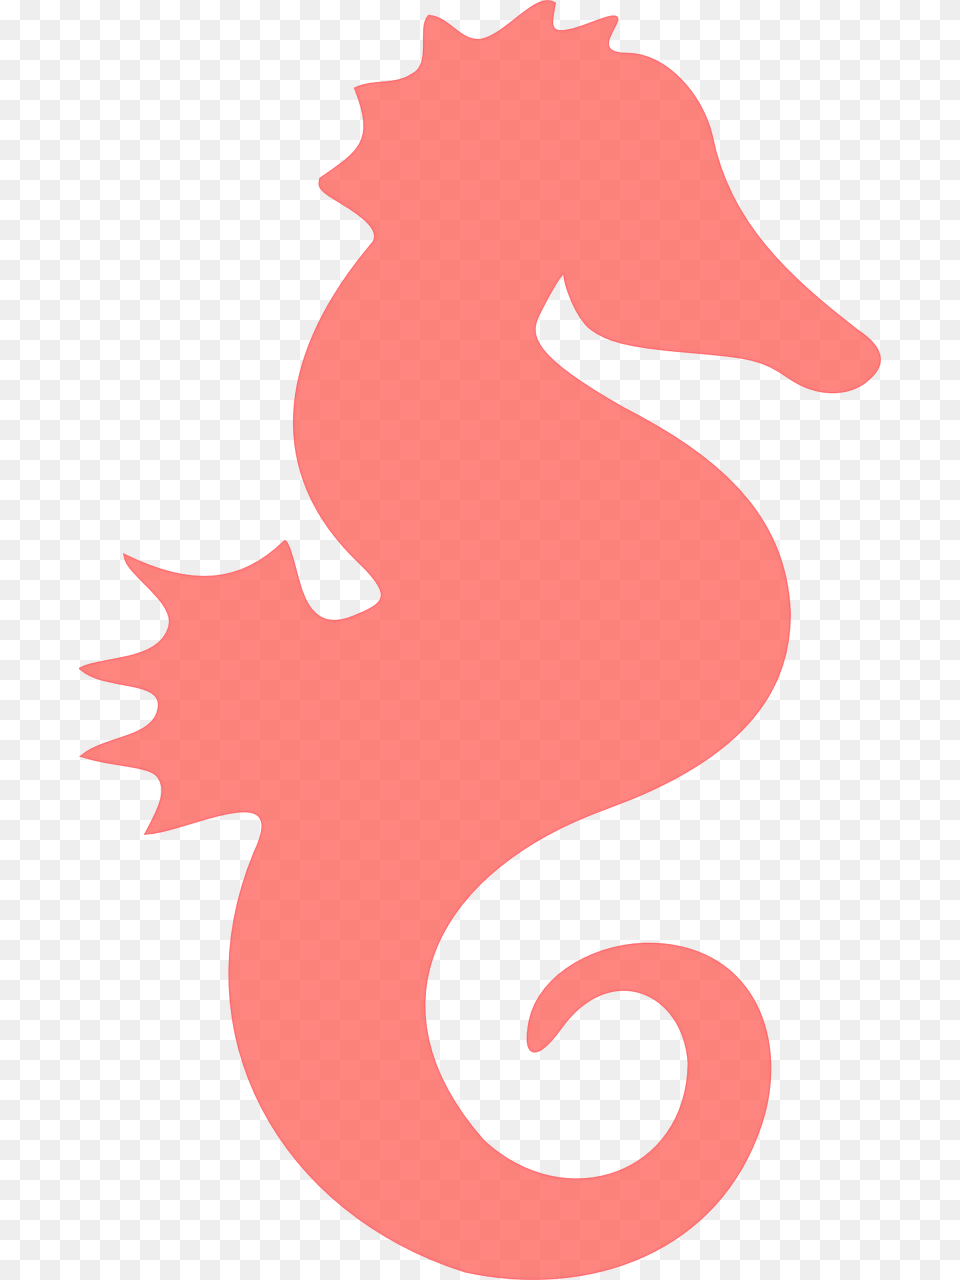 Clip Art Imagem Gratis No Pixabay Coral Seahorse Clipart, Animal, Sea Life, Mammal, Baby Png Image